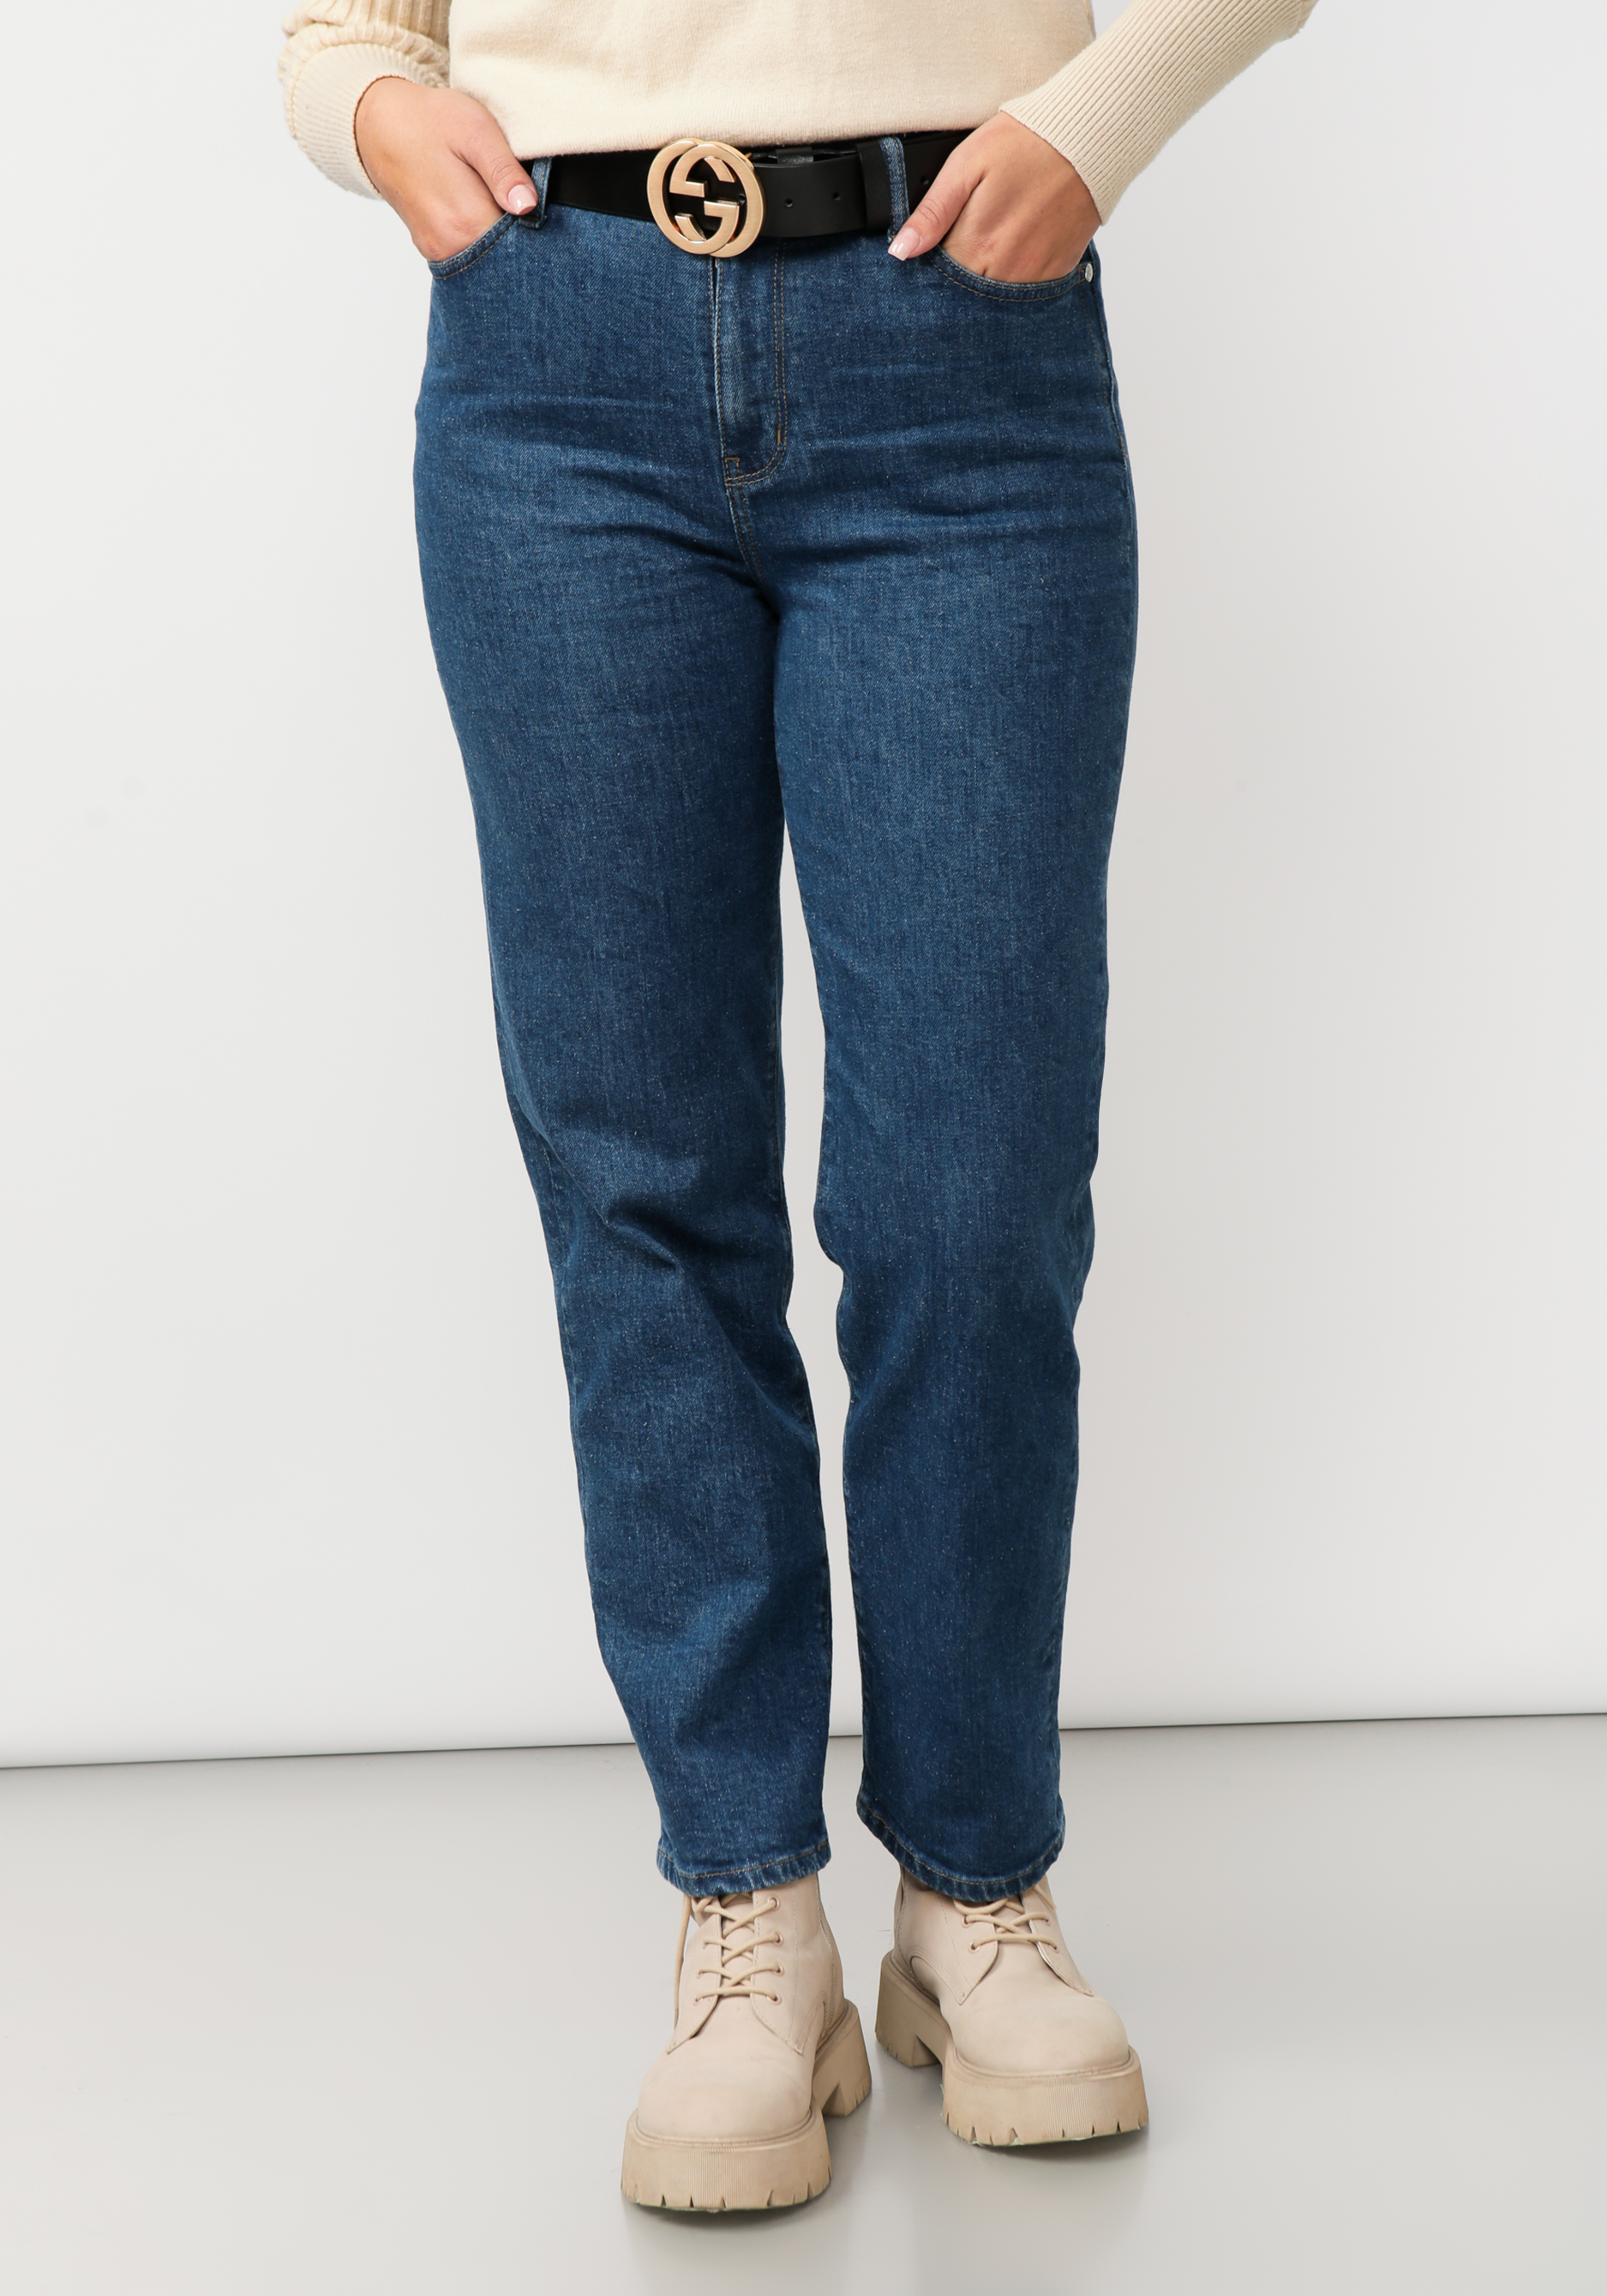 джинсы прямого кроя брион Джинсы прямого кроя с вышивкой на кармане